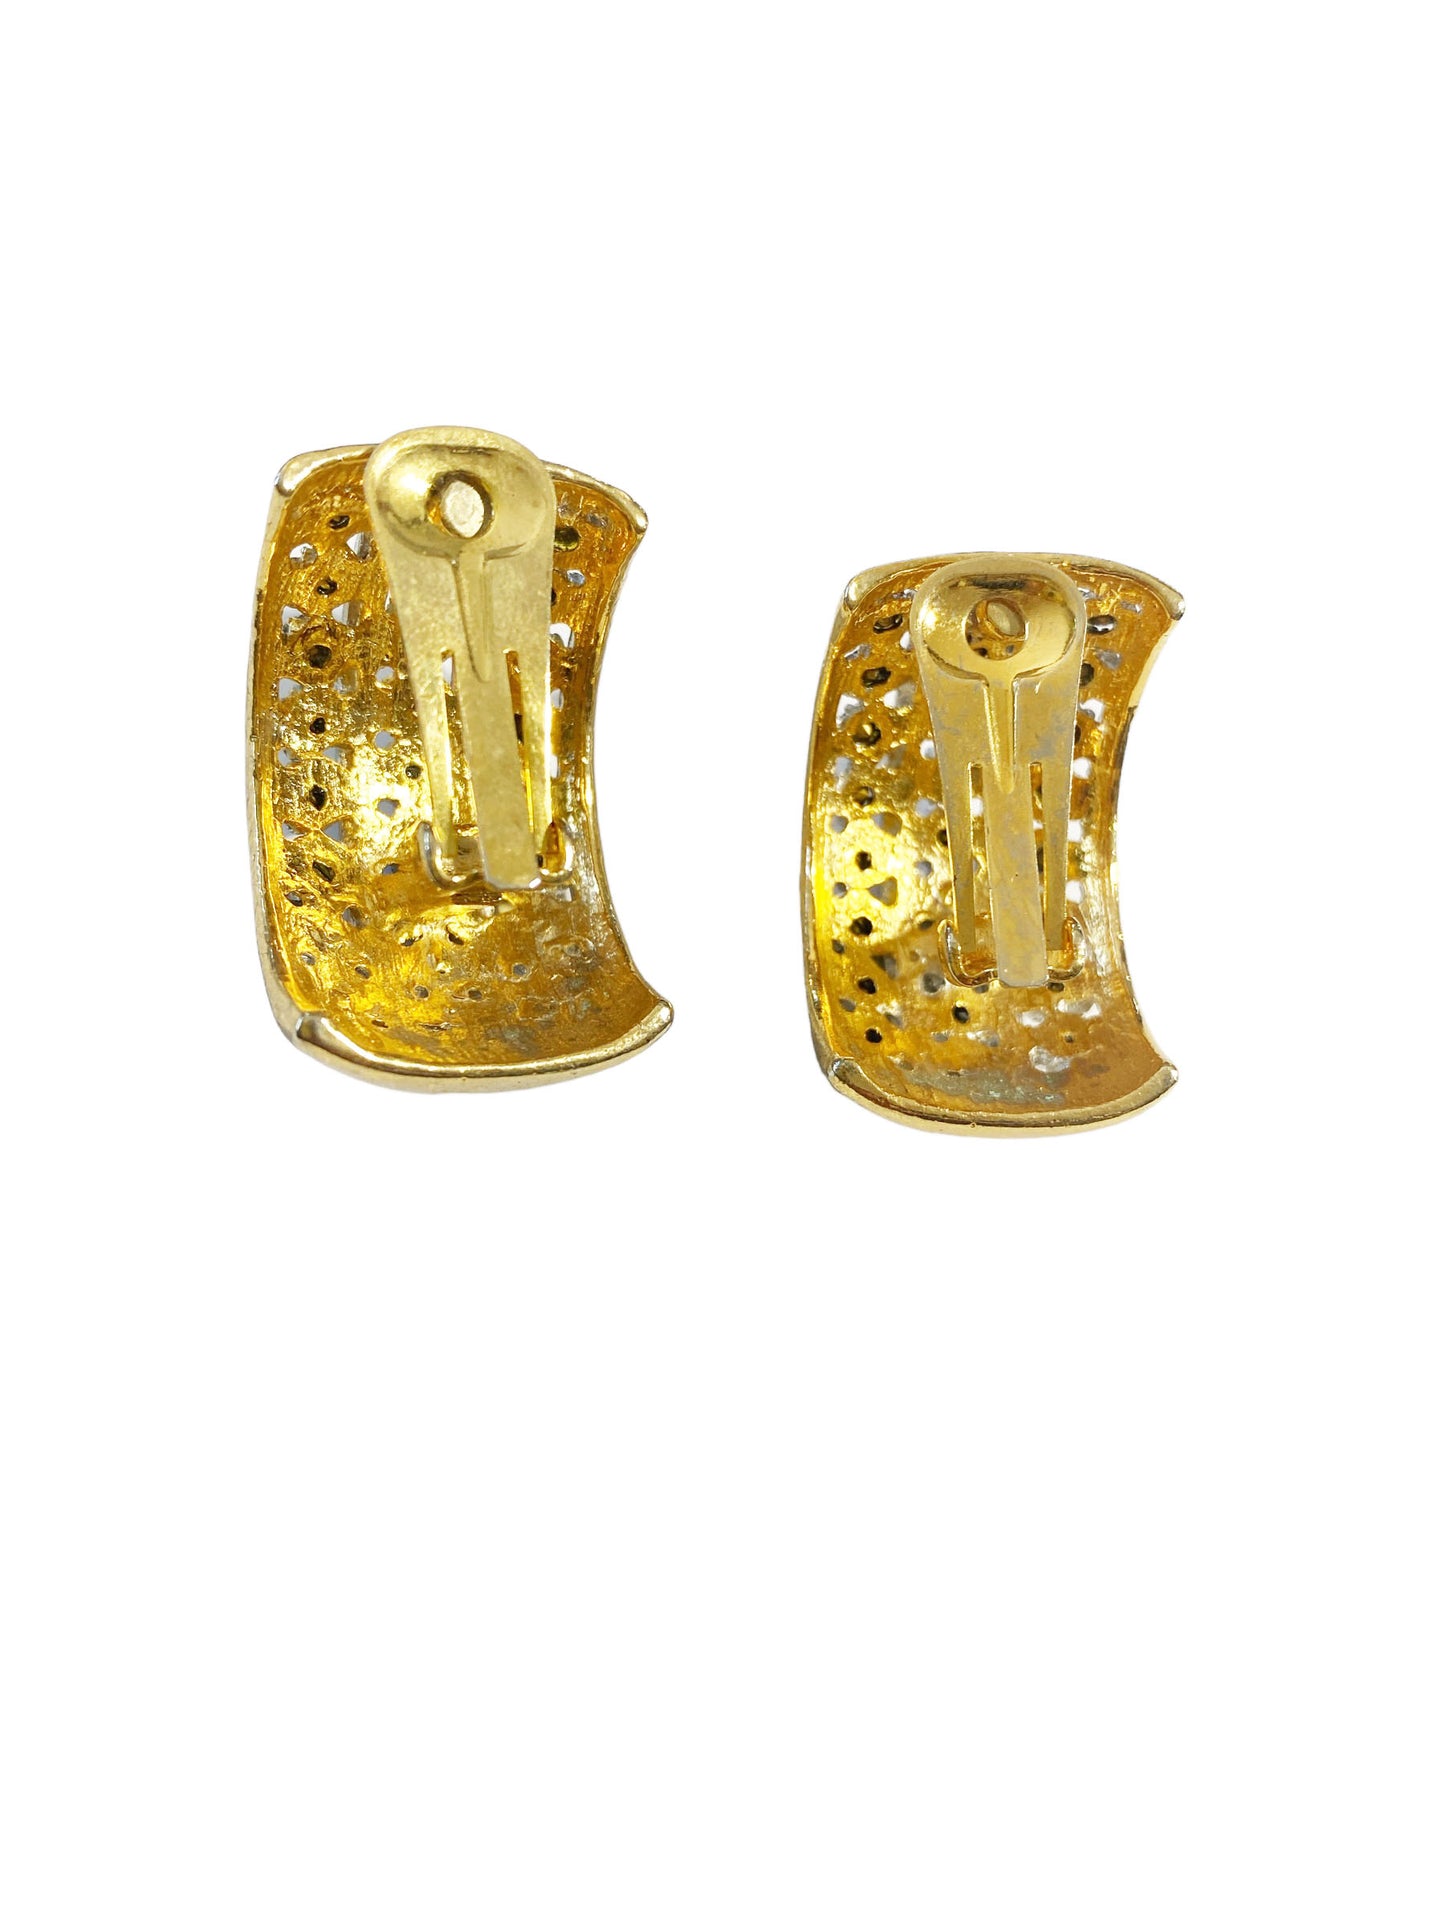 #7144 Vintage Pave Rhinestone Clip On  Earrings  Half Moon Hoop Gold Tone